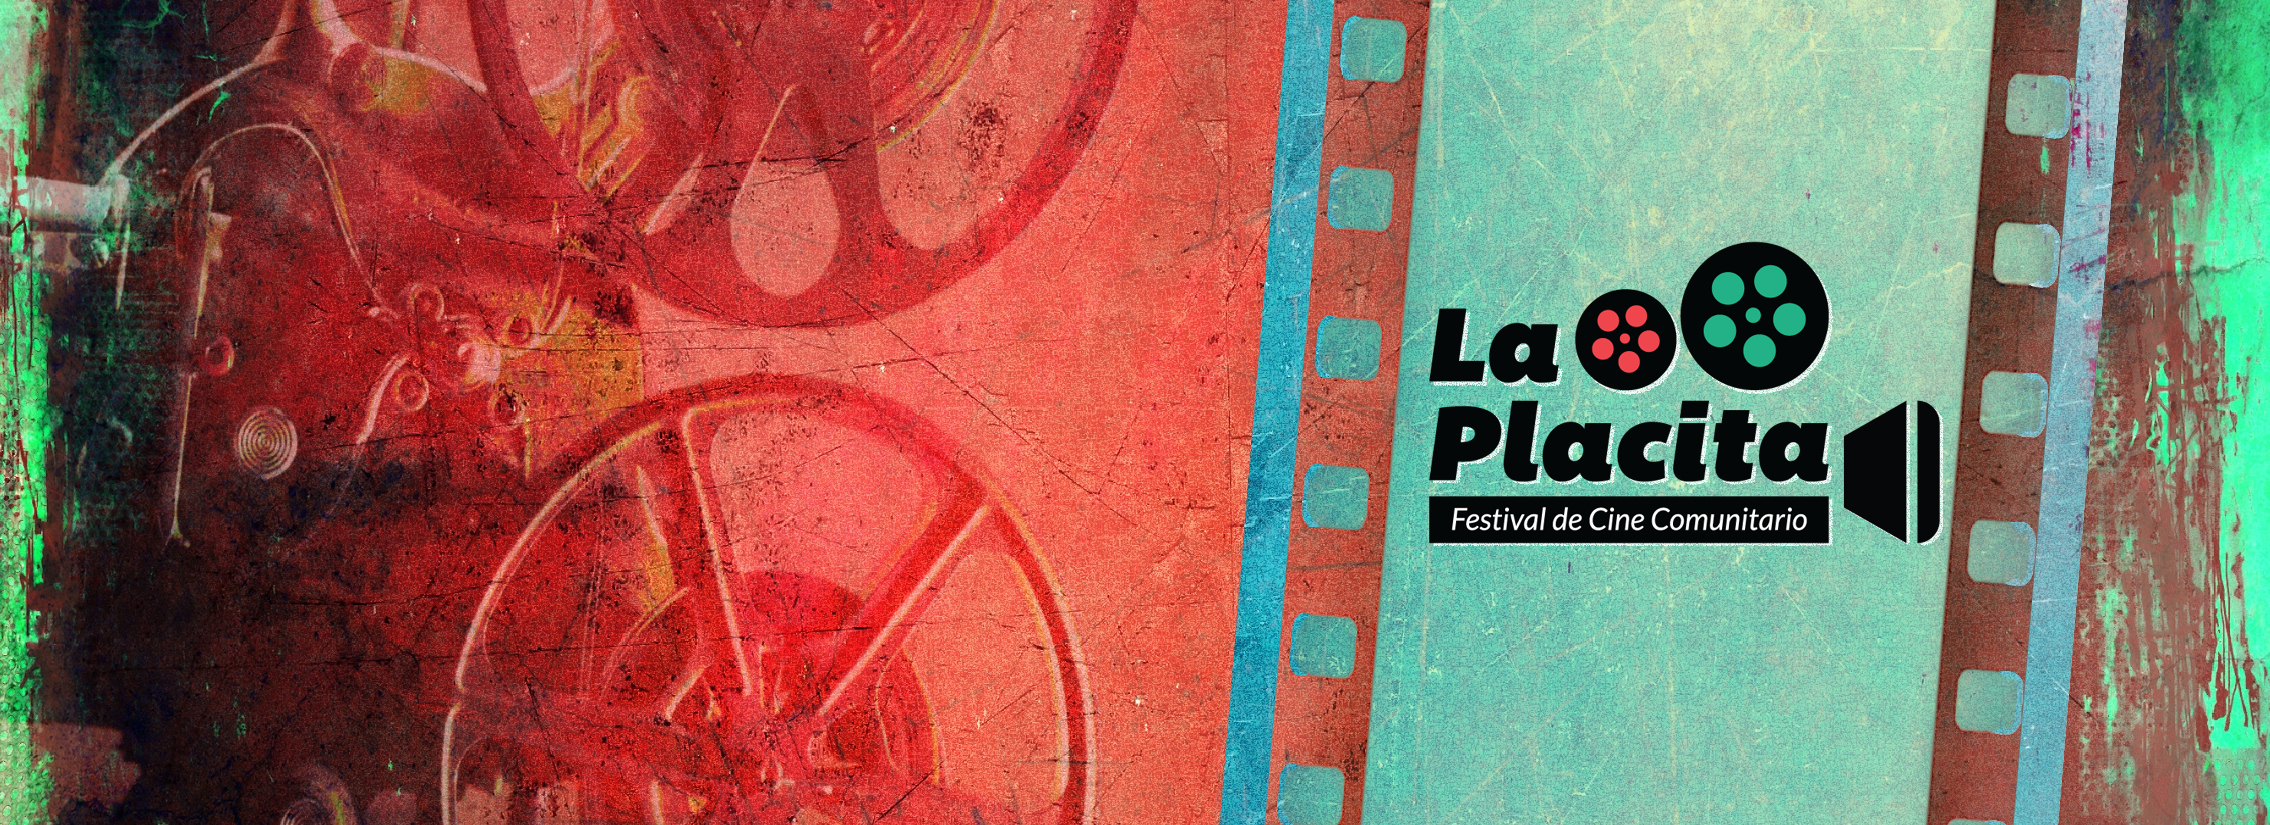 A sign for the 'La Placita' Community Film Festival.